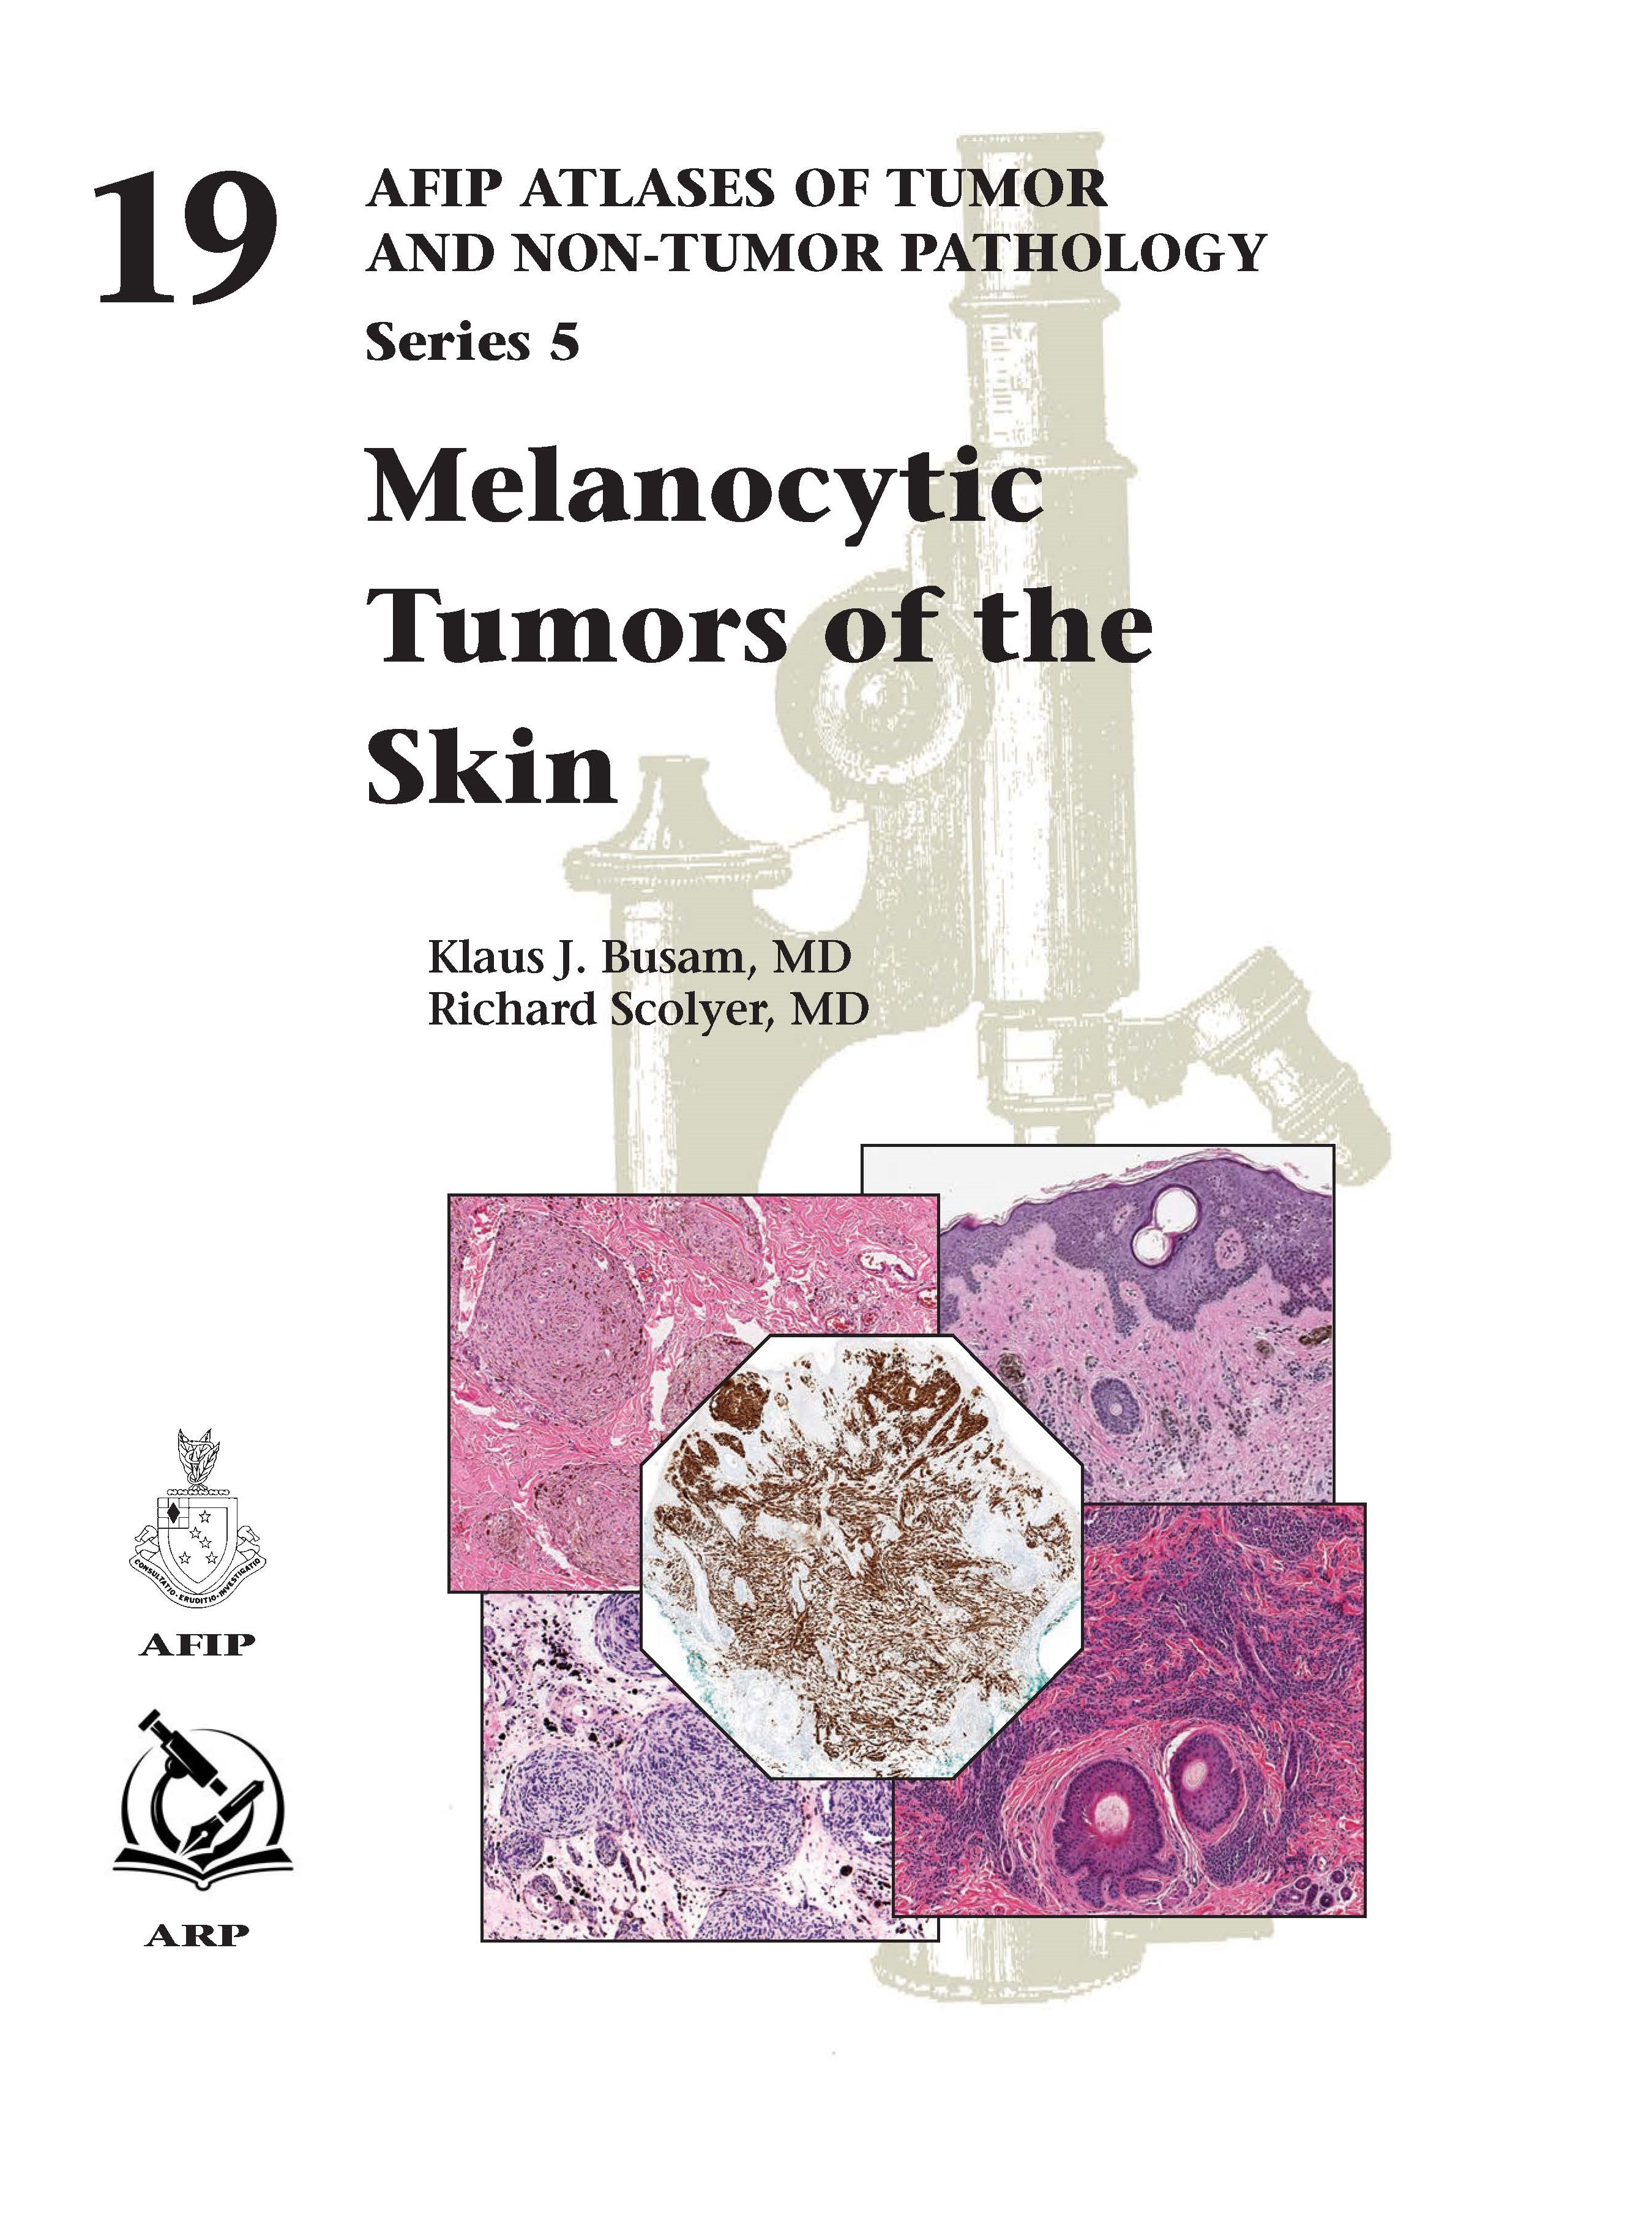 Atlases of Tumor & Non-Tumor Pathology, 5th Series,Fascicle 19